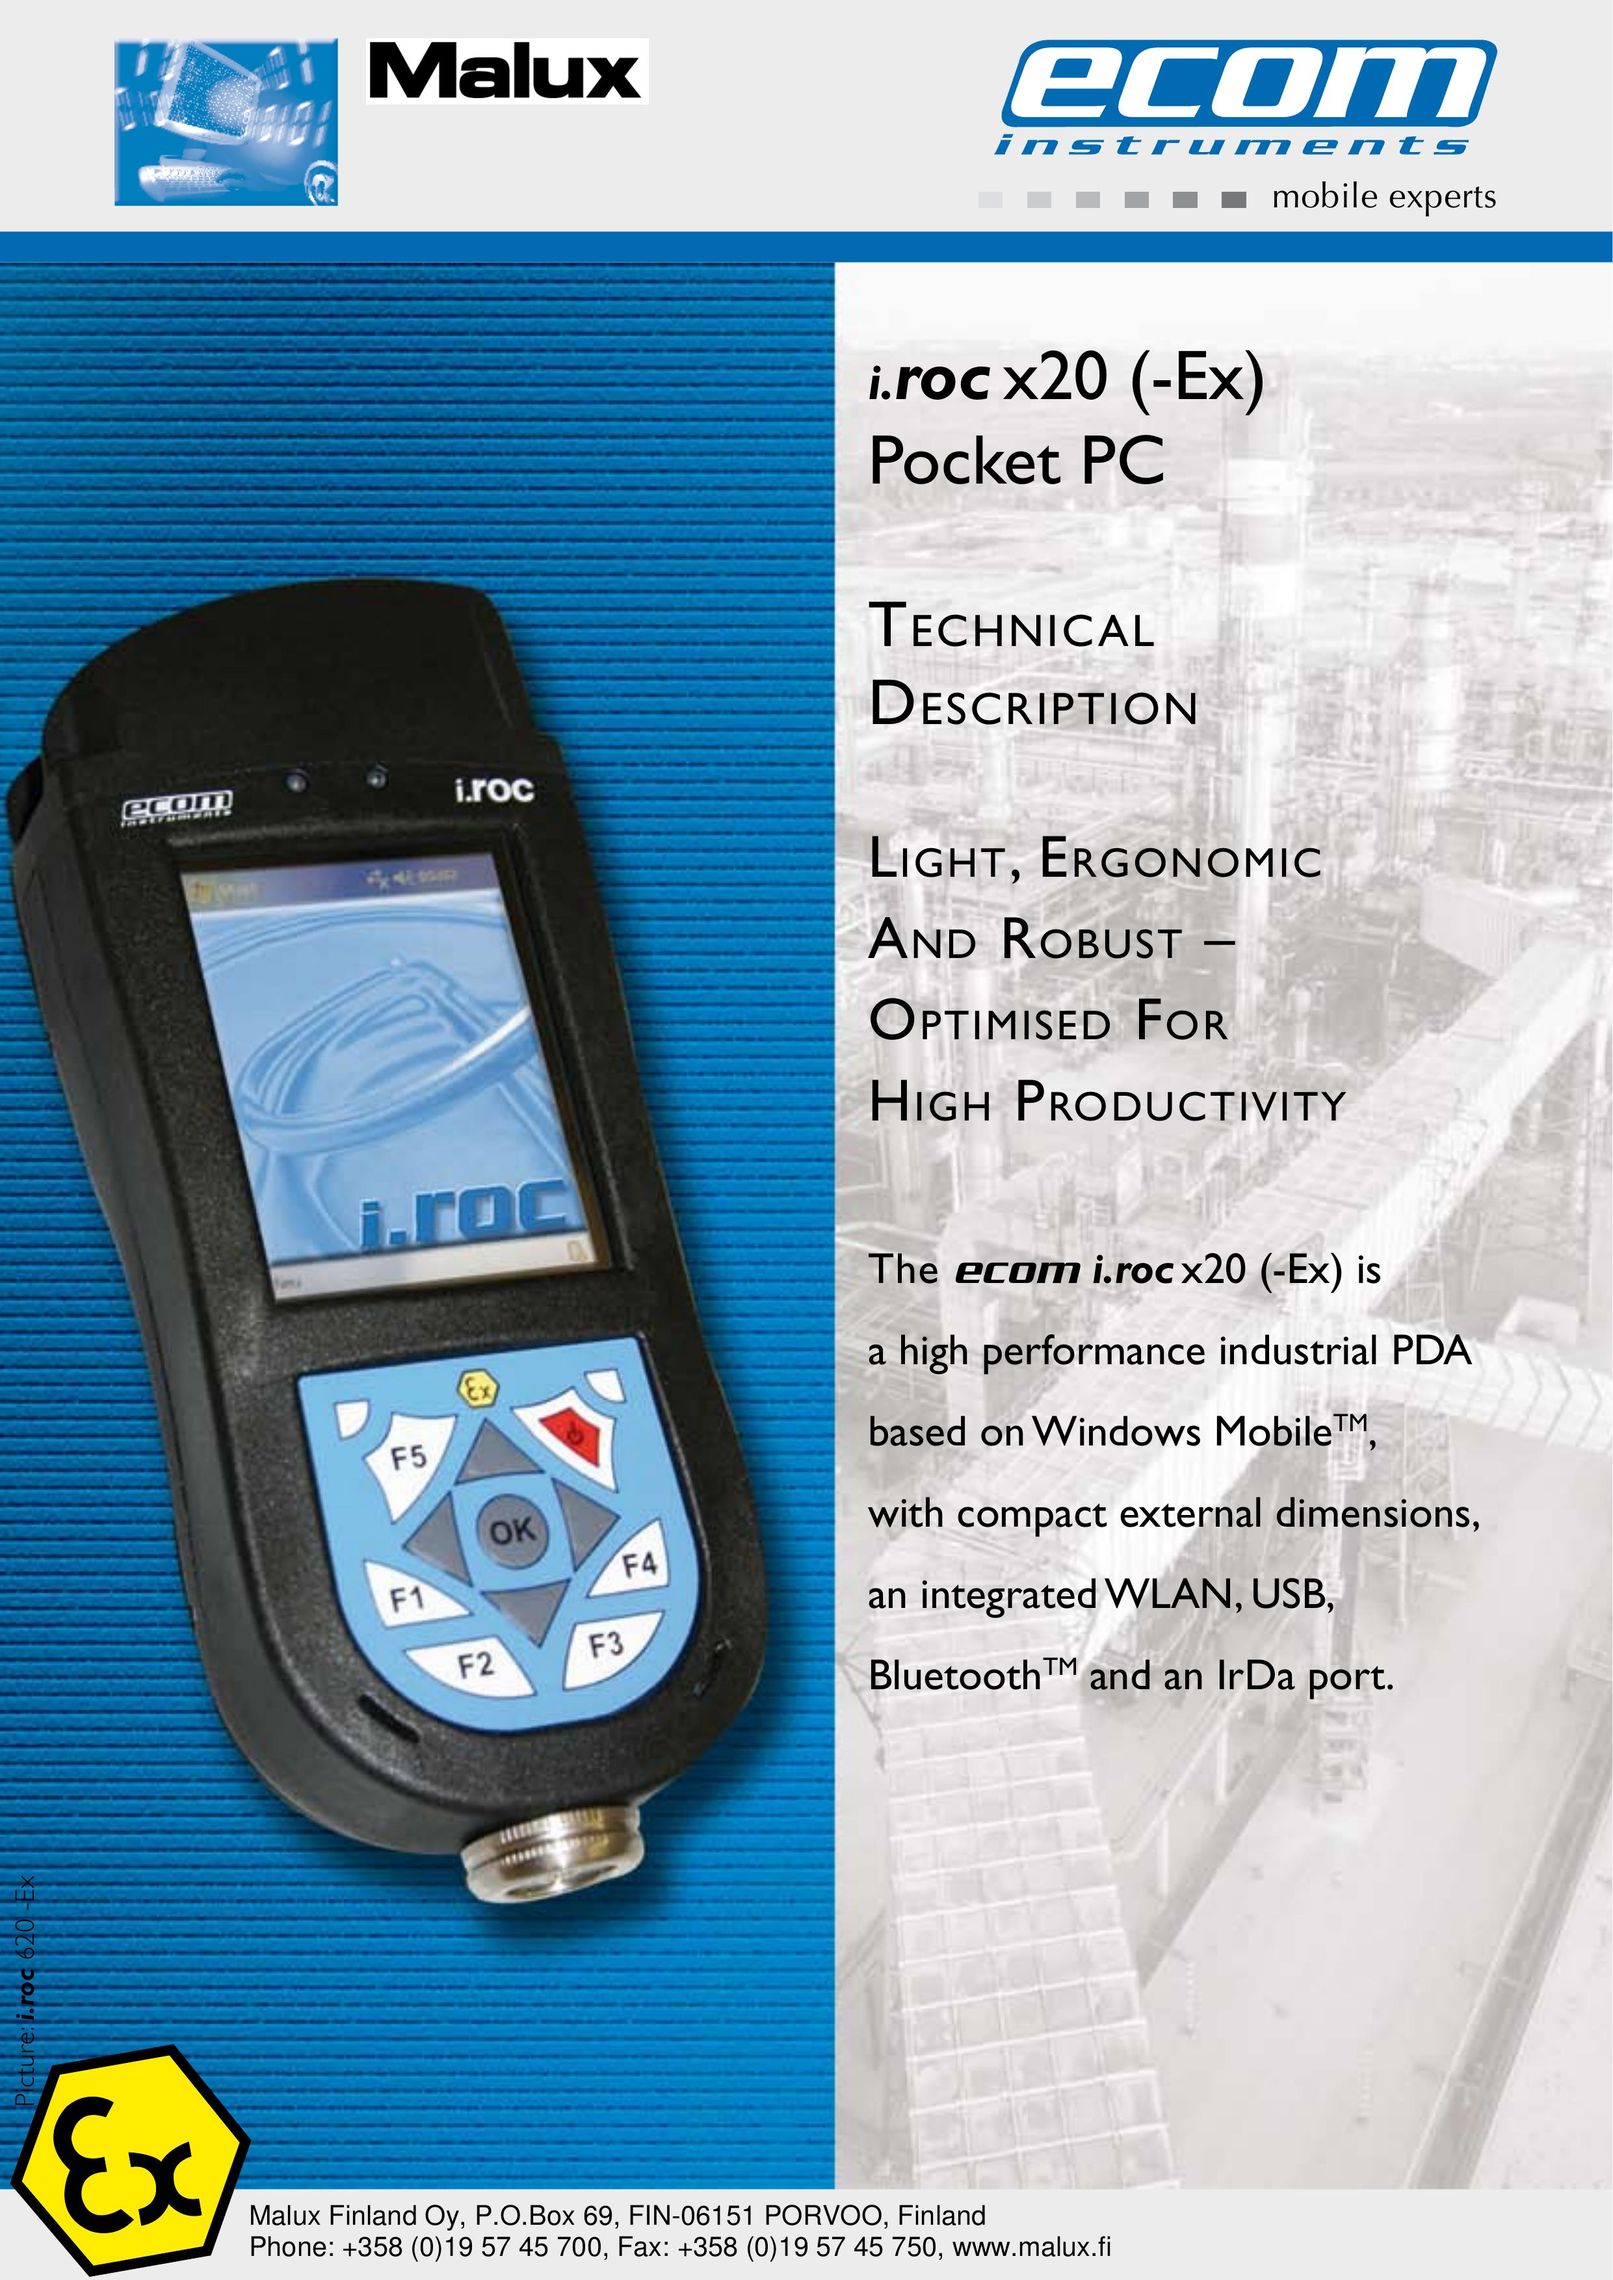 Ecom Instruments 2880 mAh PDAs & Smartphones User Manual